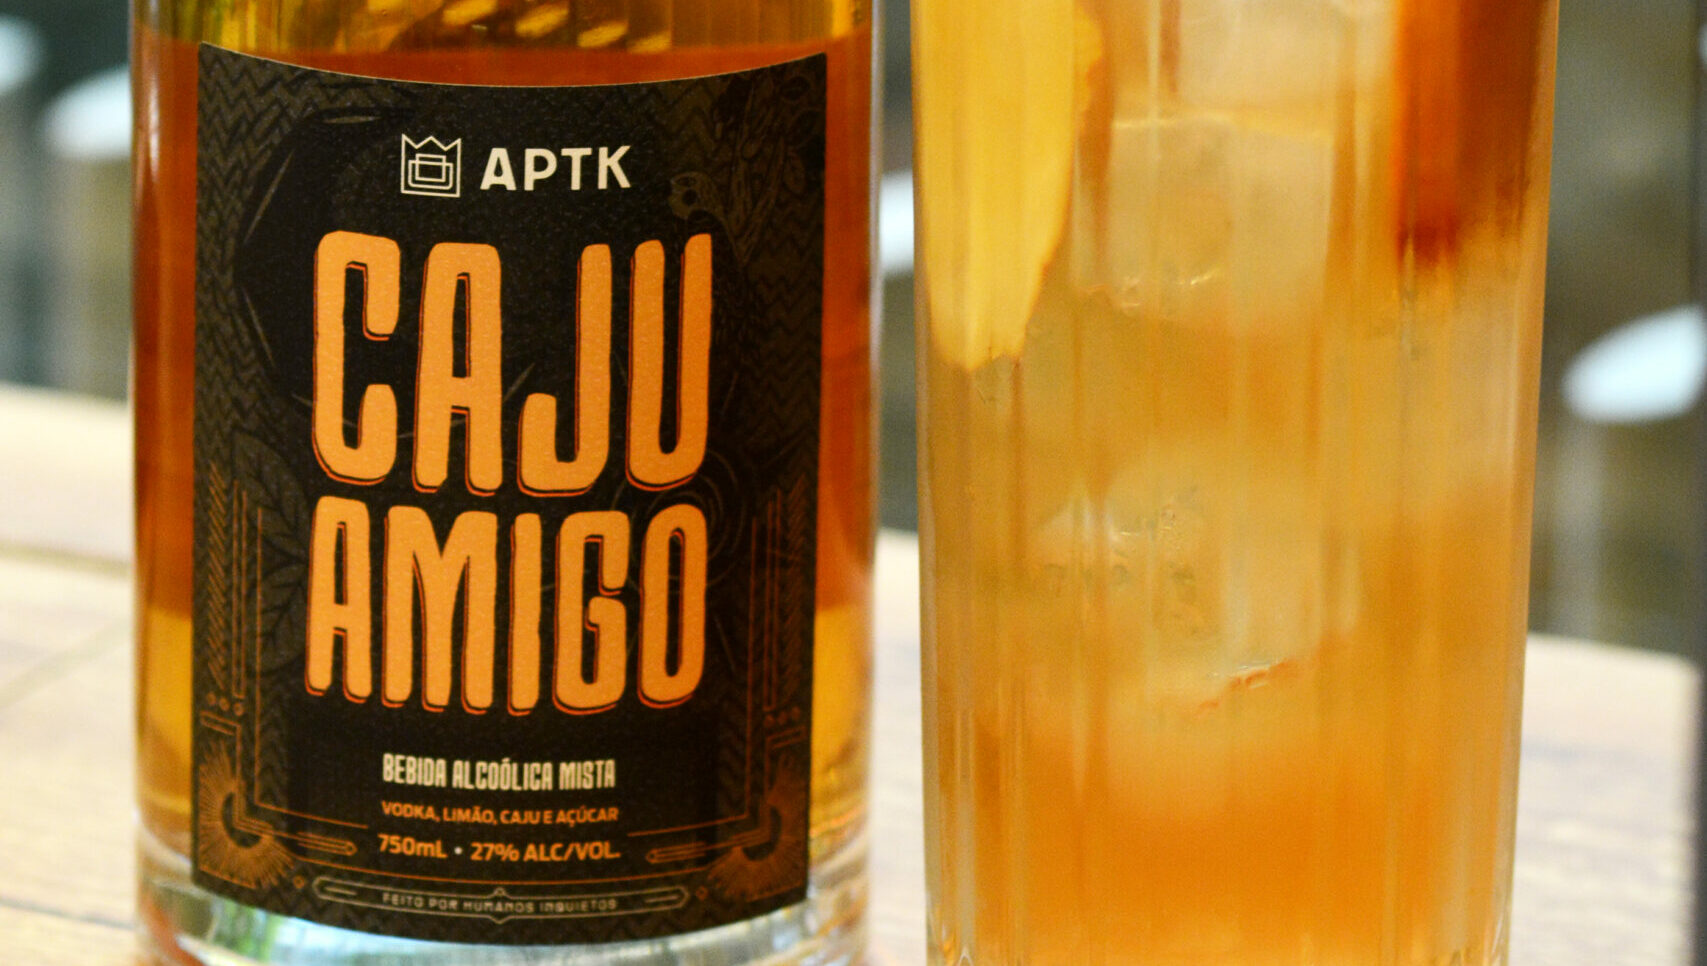 APTK lança Caju Amigo engarrafado em homenagem à era de ouro dos coquetéis/Créditos: Divulgação